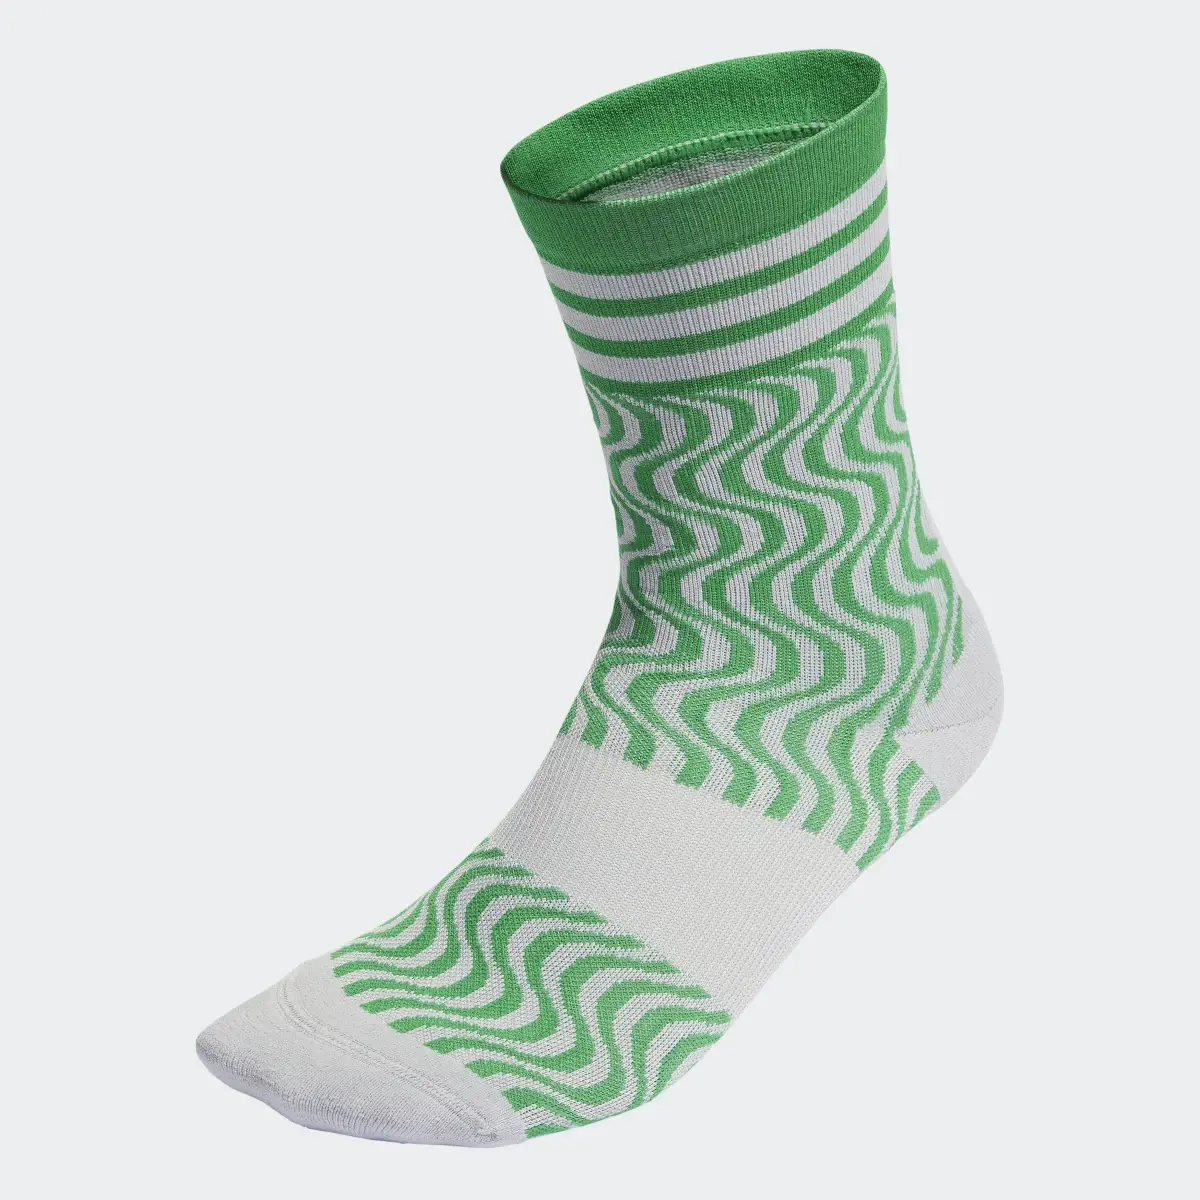 Adidas by Stella McCartney Crew Socks. 1